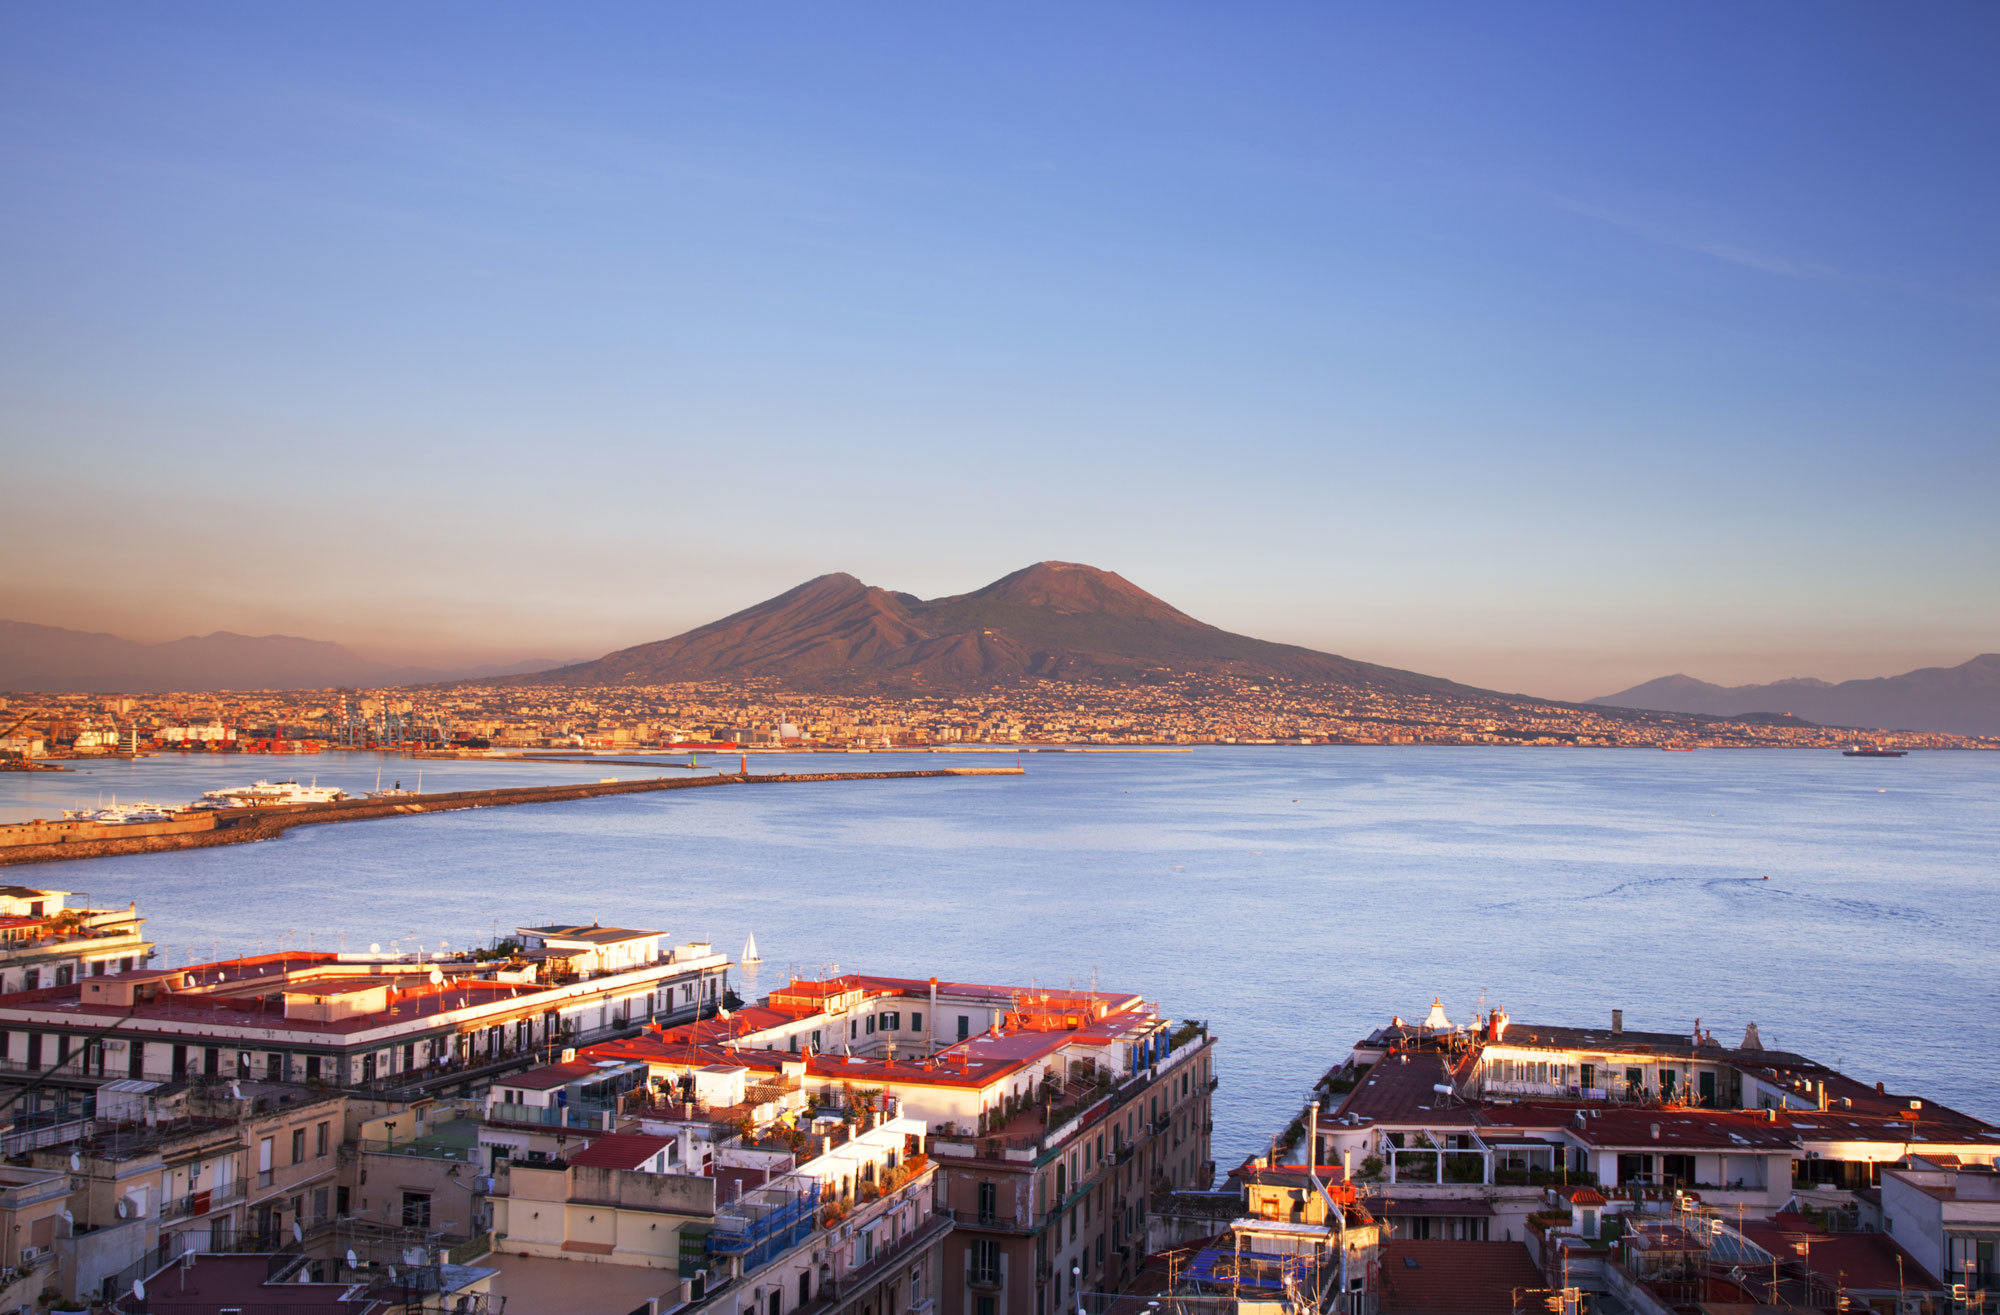 Veduta della città di Napoli dall'alto con il Vesuvio sullo sfondo